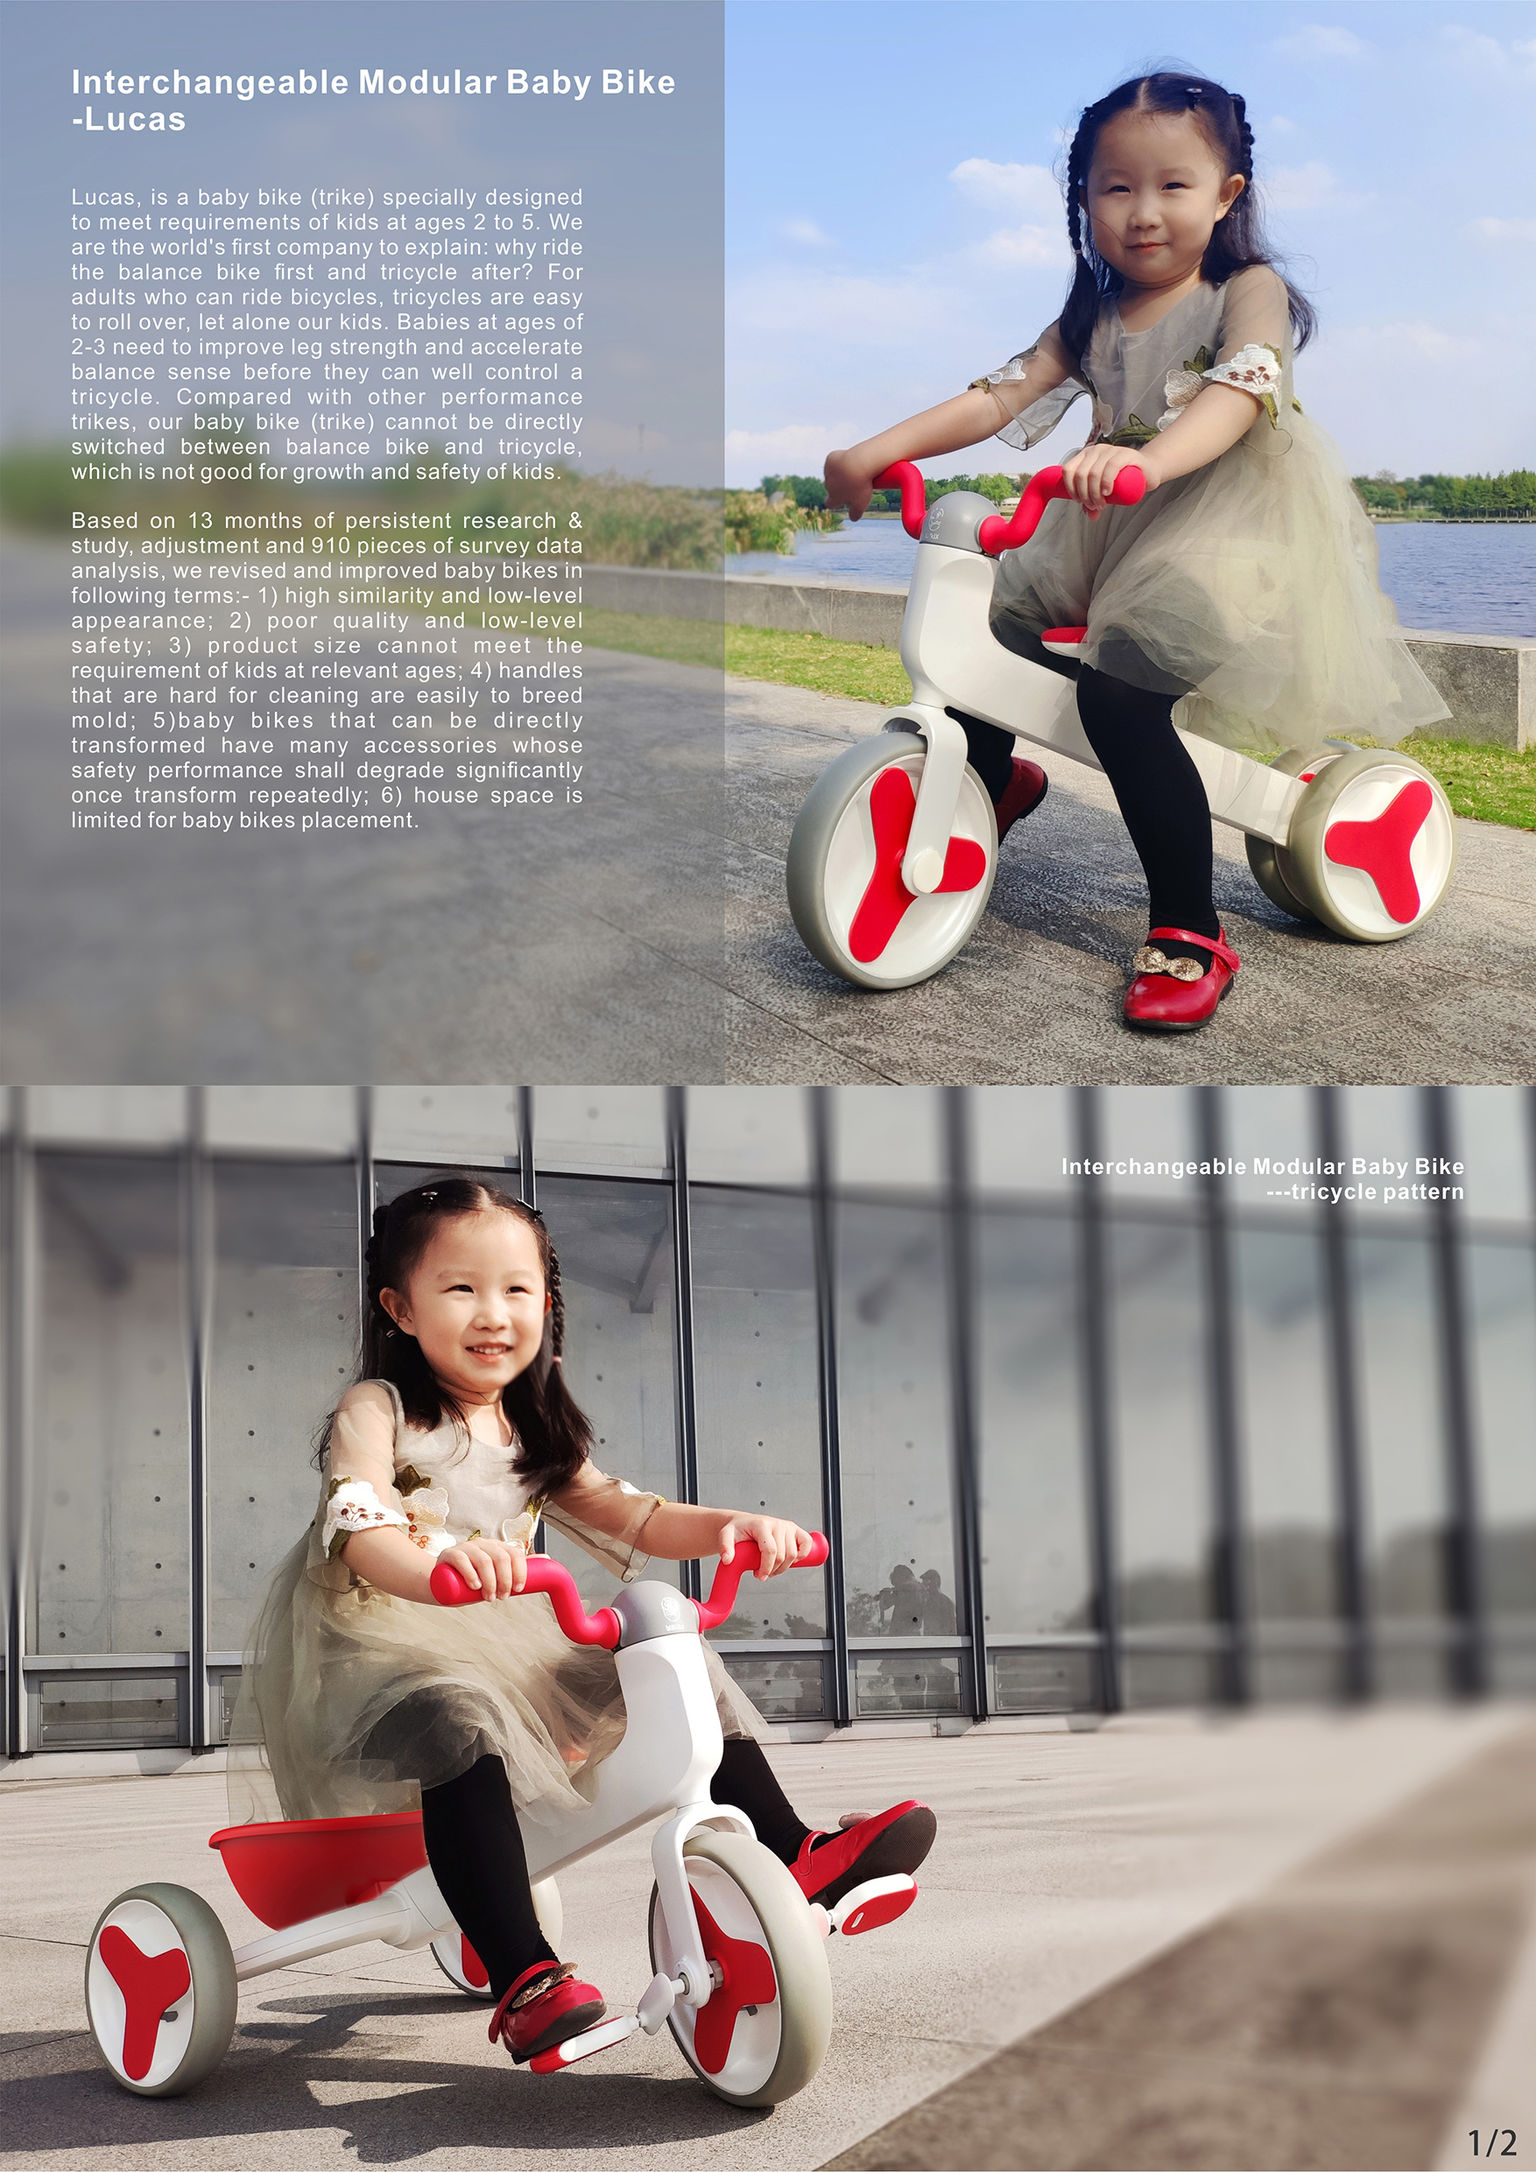 Interchangeable Modular Baby Bike